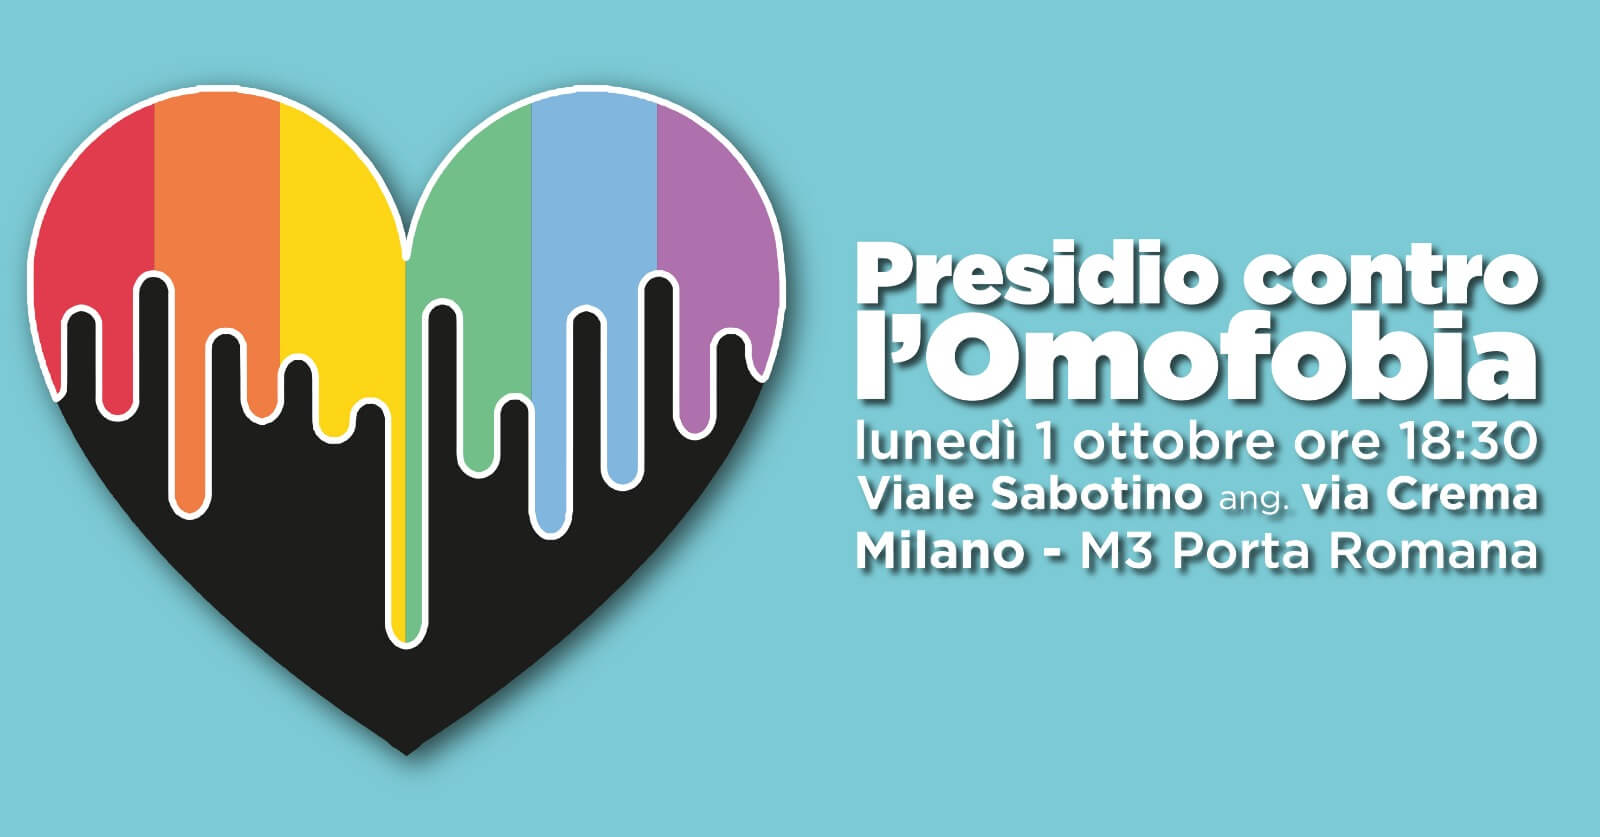 Milano, lunedì 1° ottobre presidio contro l'omofobia dopo l'ennesima aggressione - presidio contro omofobia - Gay.it